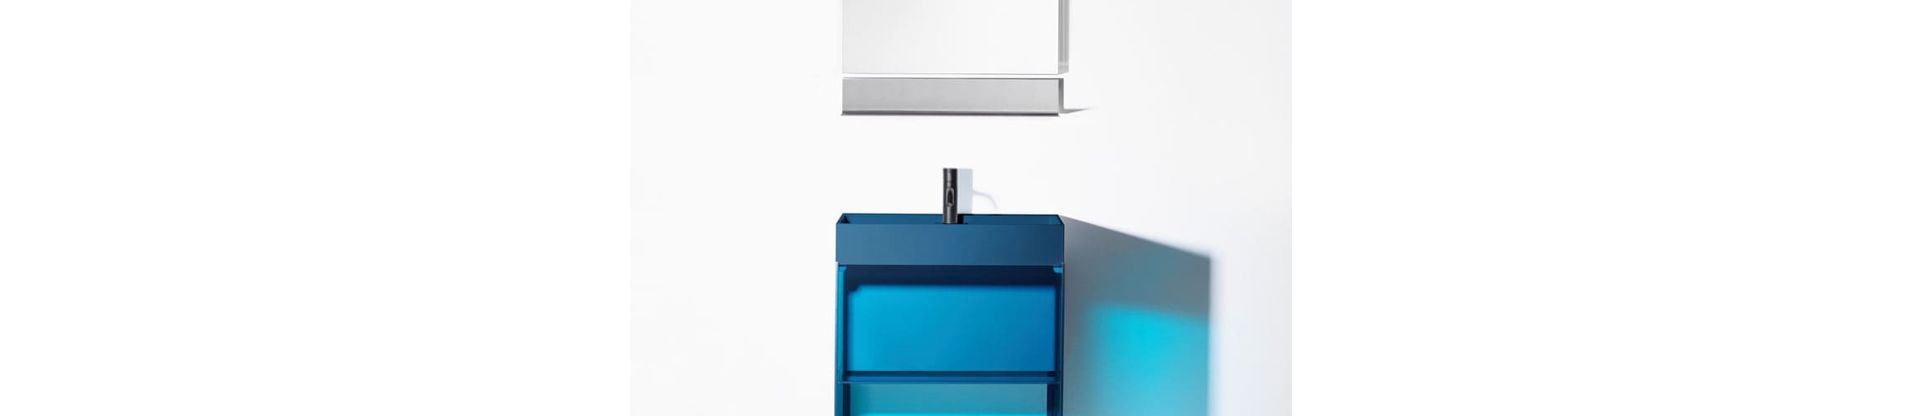 Farbiges Glas und ein raffiniertes Montagesystem: das Möbelsystem «rgb» von Stefan Diez für Burgbad.